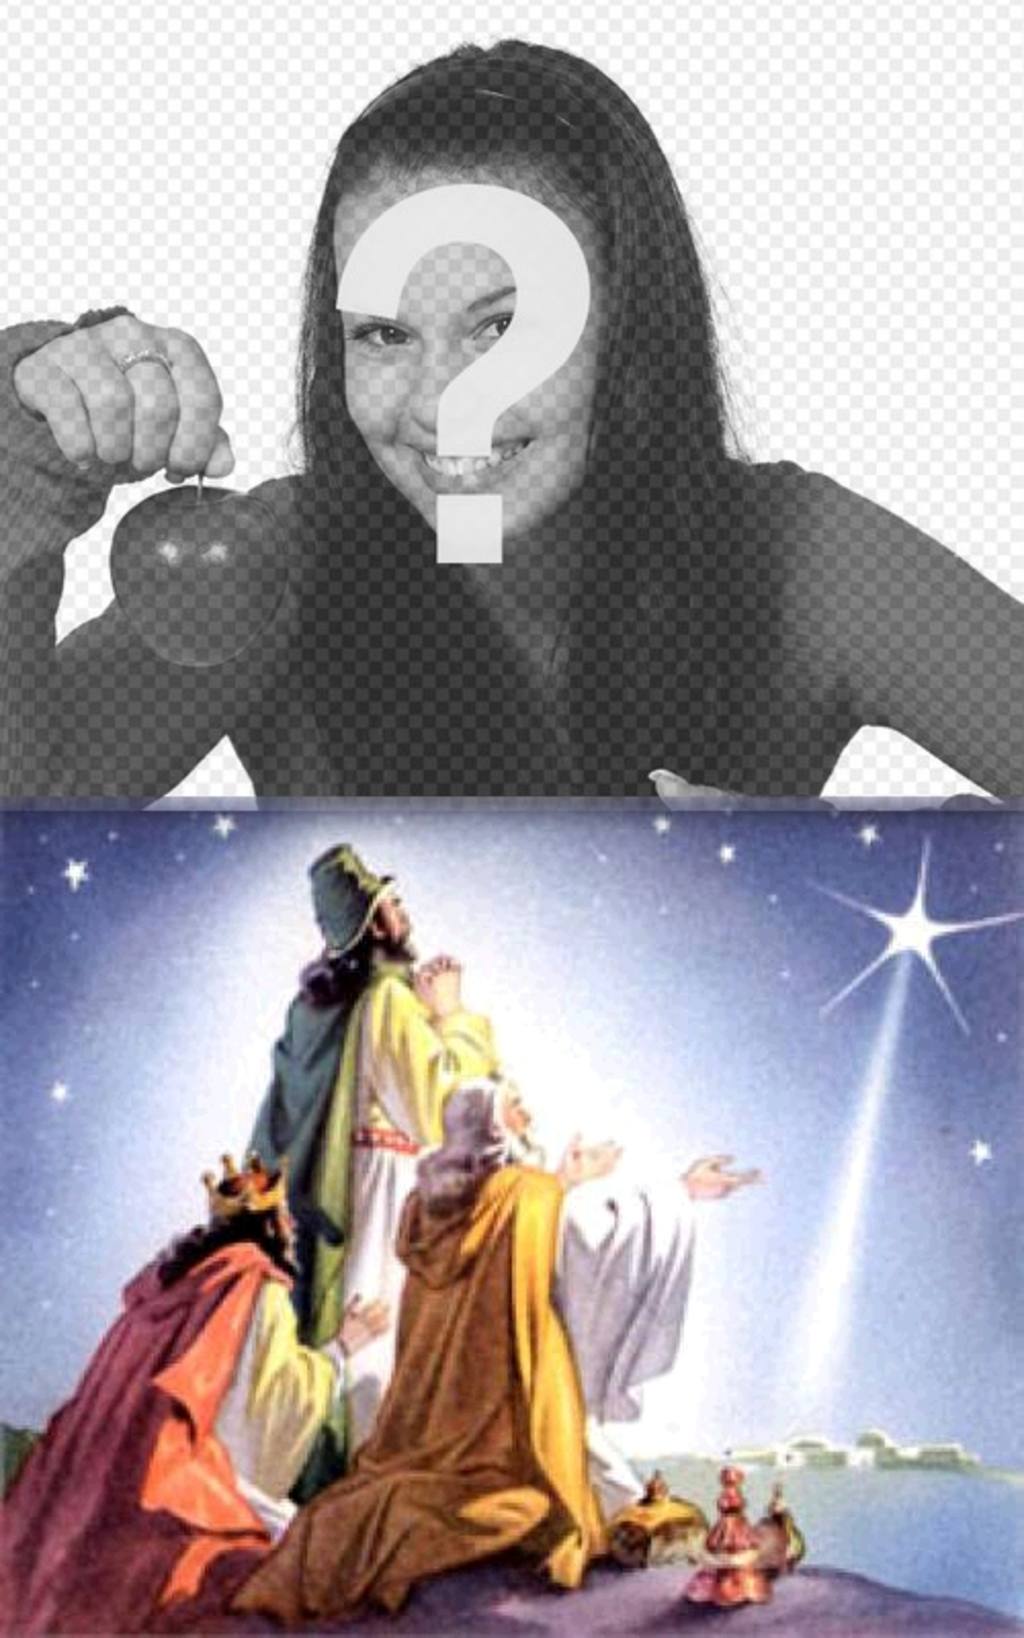 Weihnachtskarte der drei Weisen aus dem Morgenland mit ihren Angeboten kommen nach Bethlehem, nach dem Stern, der das Kind Jesús.Podemos ein Bild von unserer Wahl markiert. Beglückwünscht die Feiertage mit..